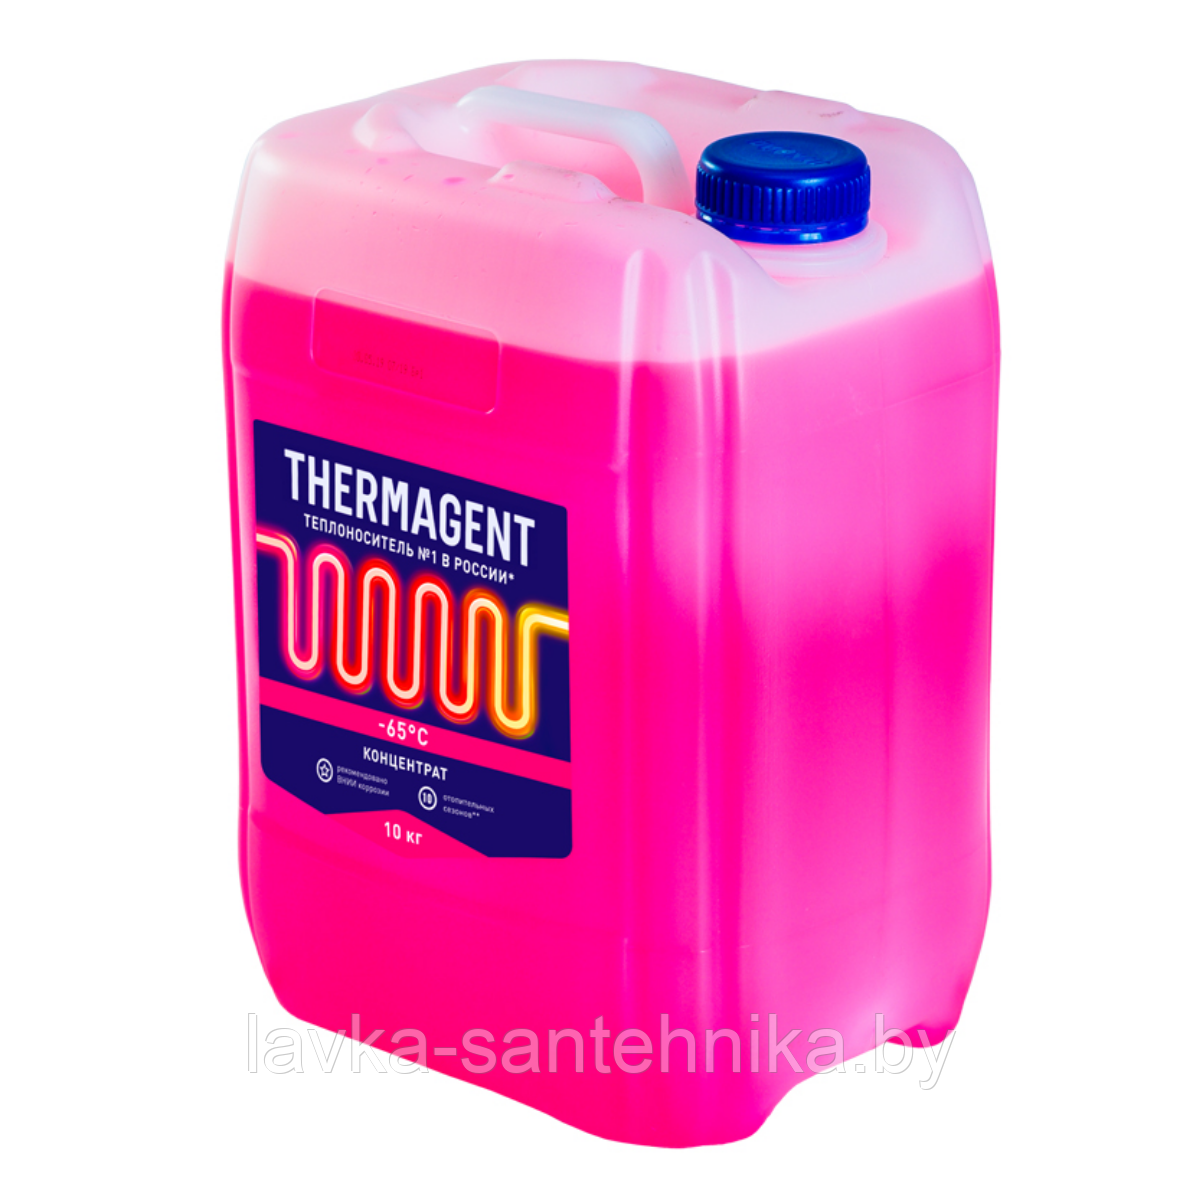 Теплоноситель концентрат Thermagent -65°C, 10 кг (срок службы: 10 сезонов), фото 1